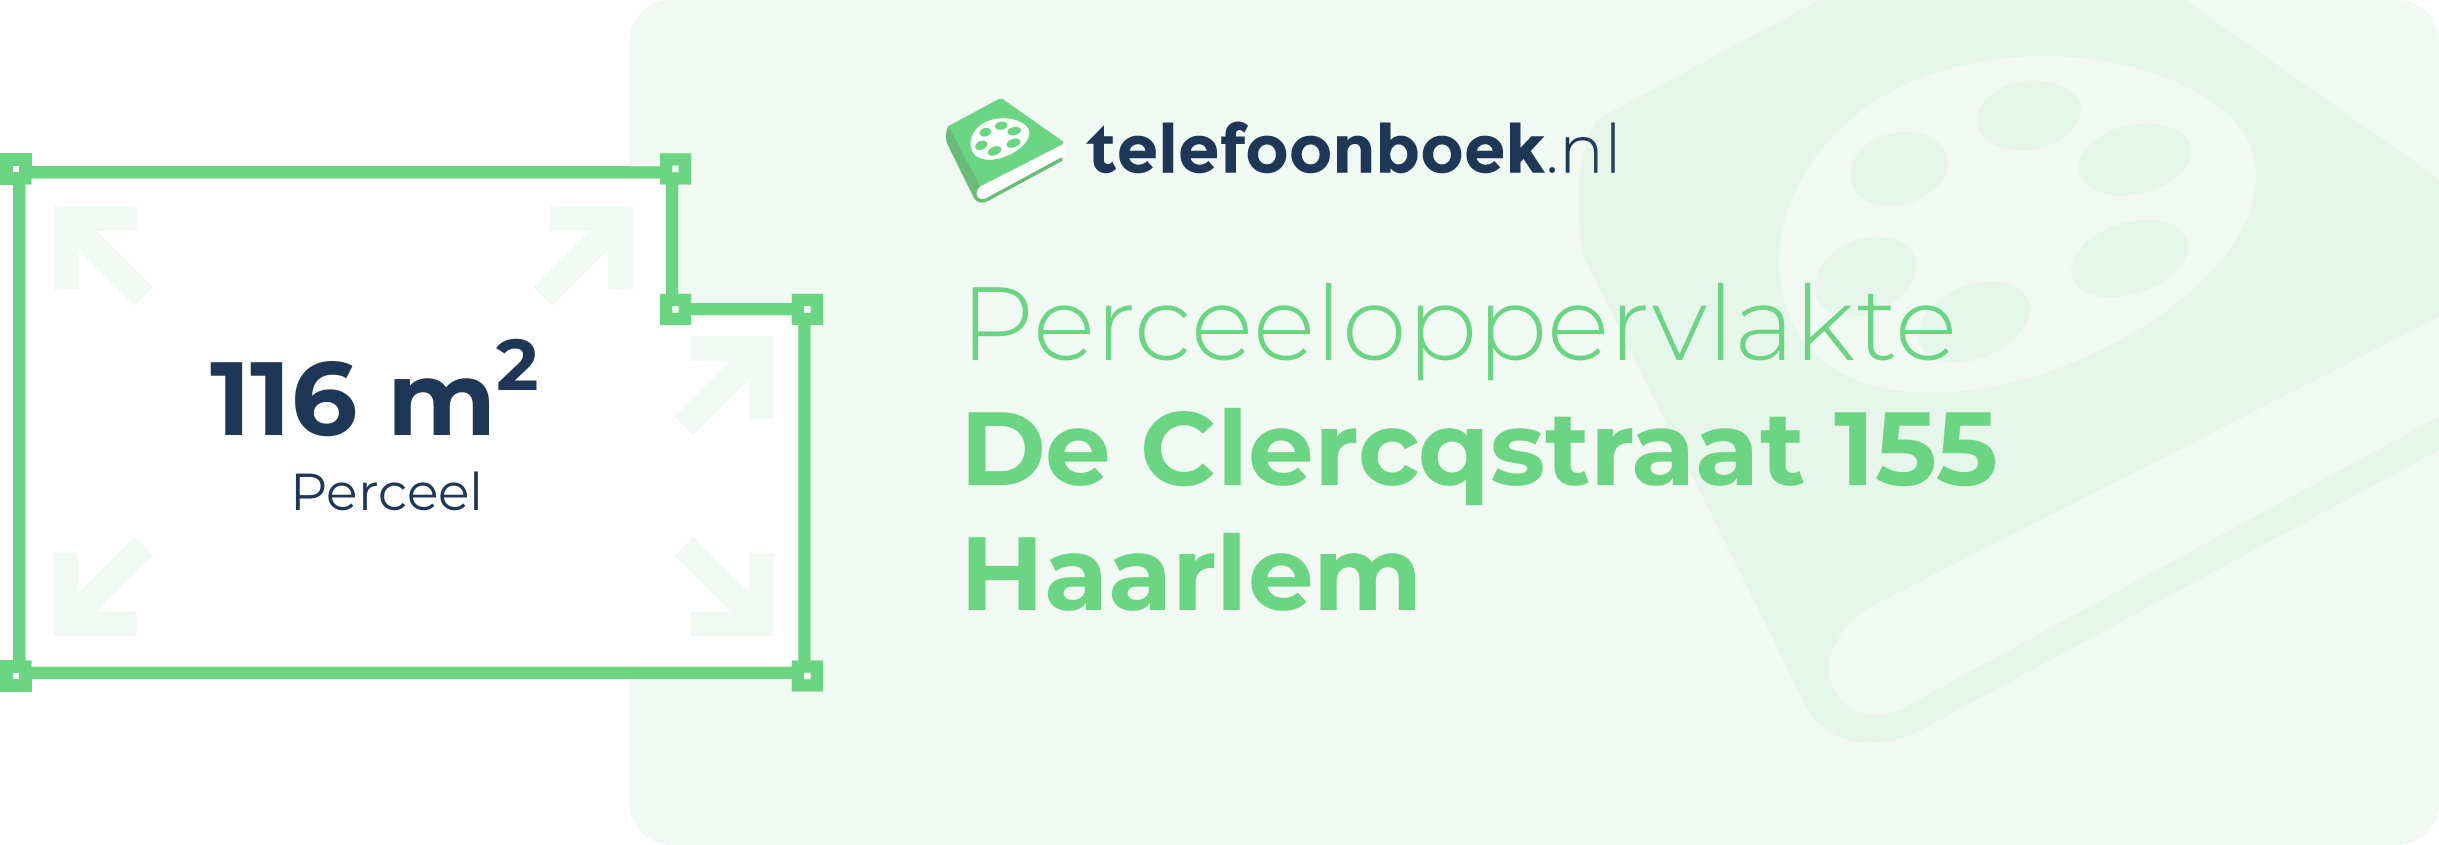 Perceeloppervlakte De Clercqstraat 155 Haarlem